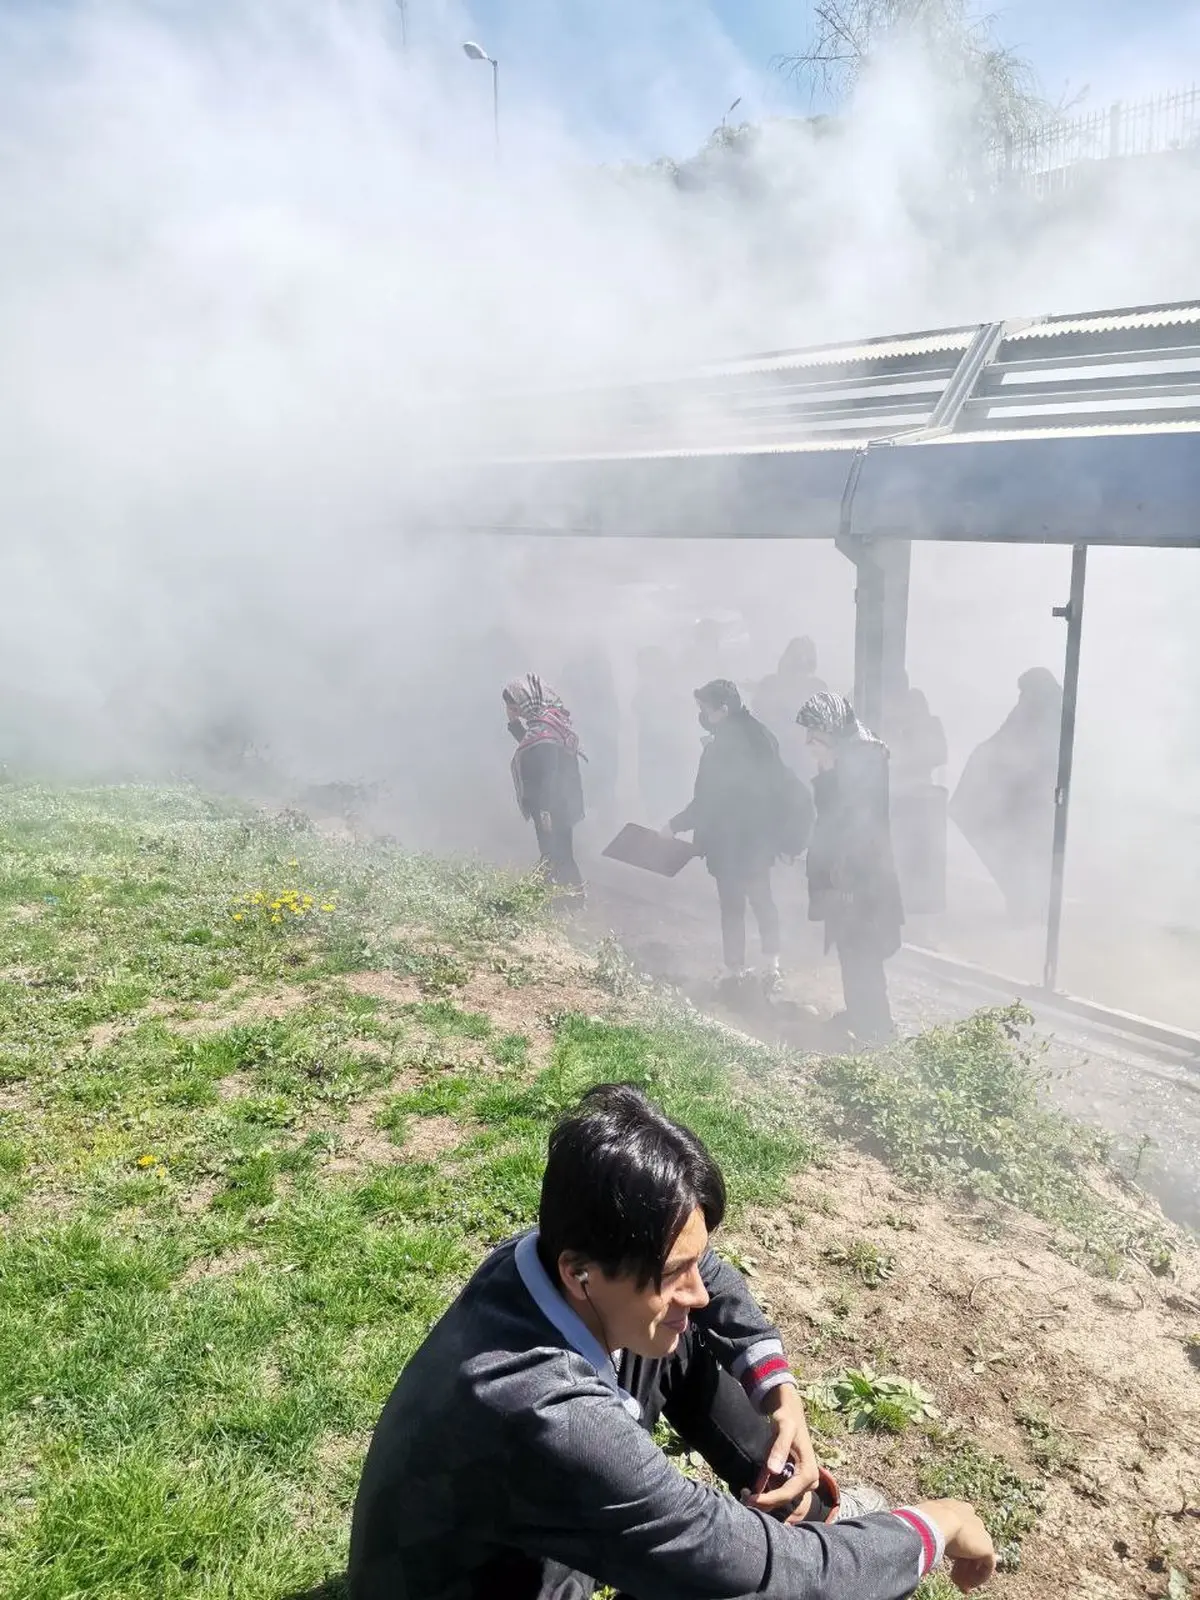 انتشار دود عجیب در اتوبوس بی آر تی در تهران + توضیح اتوبوسرانی